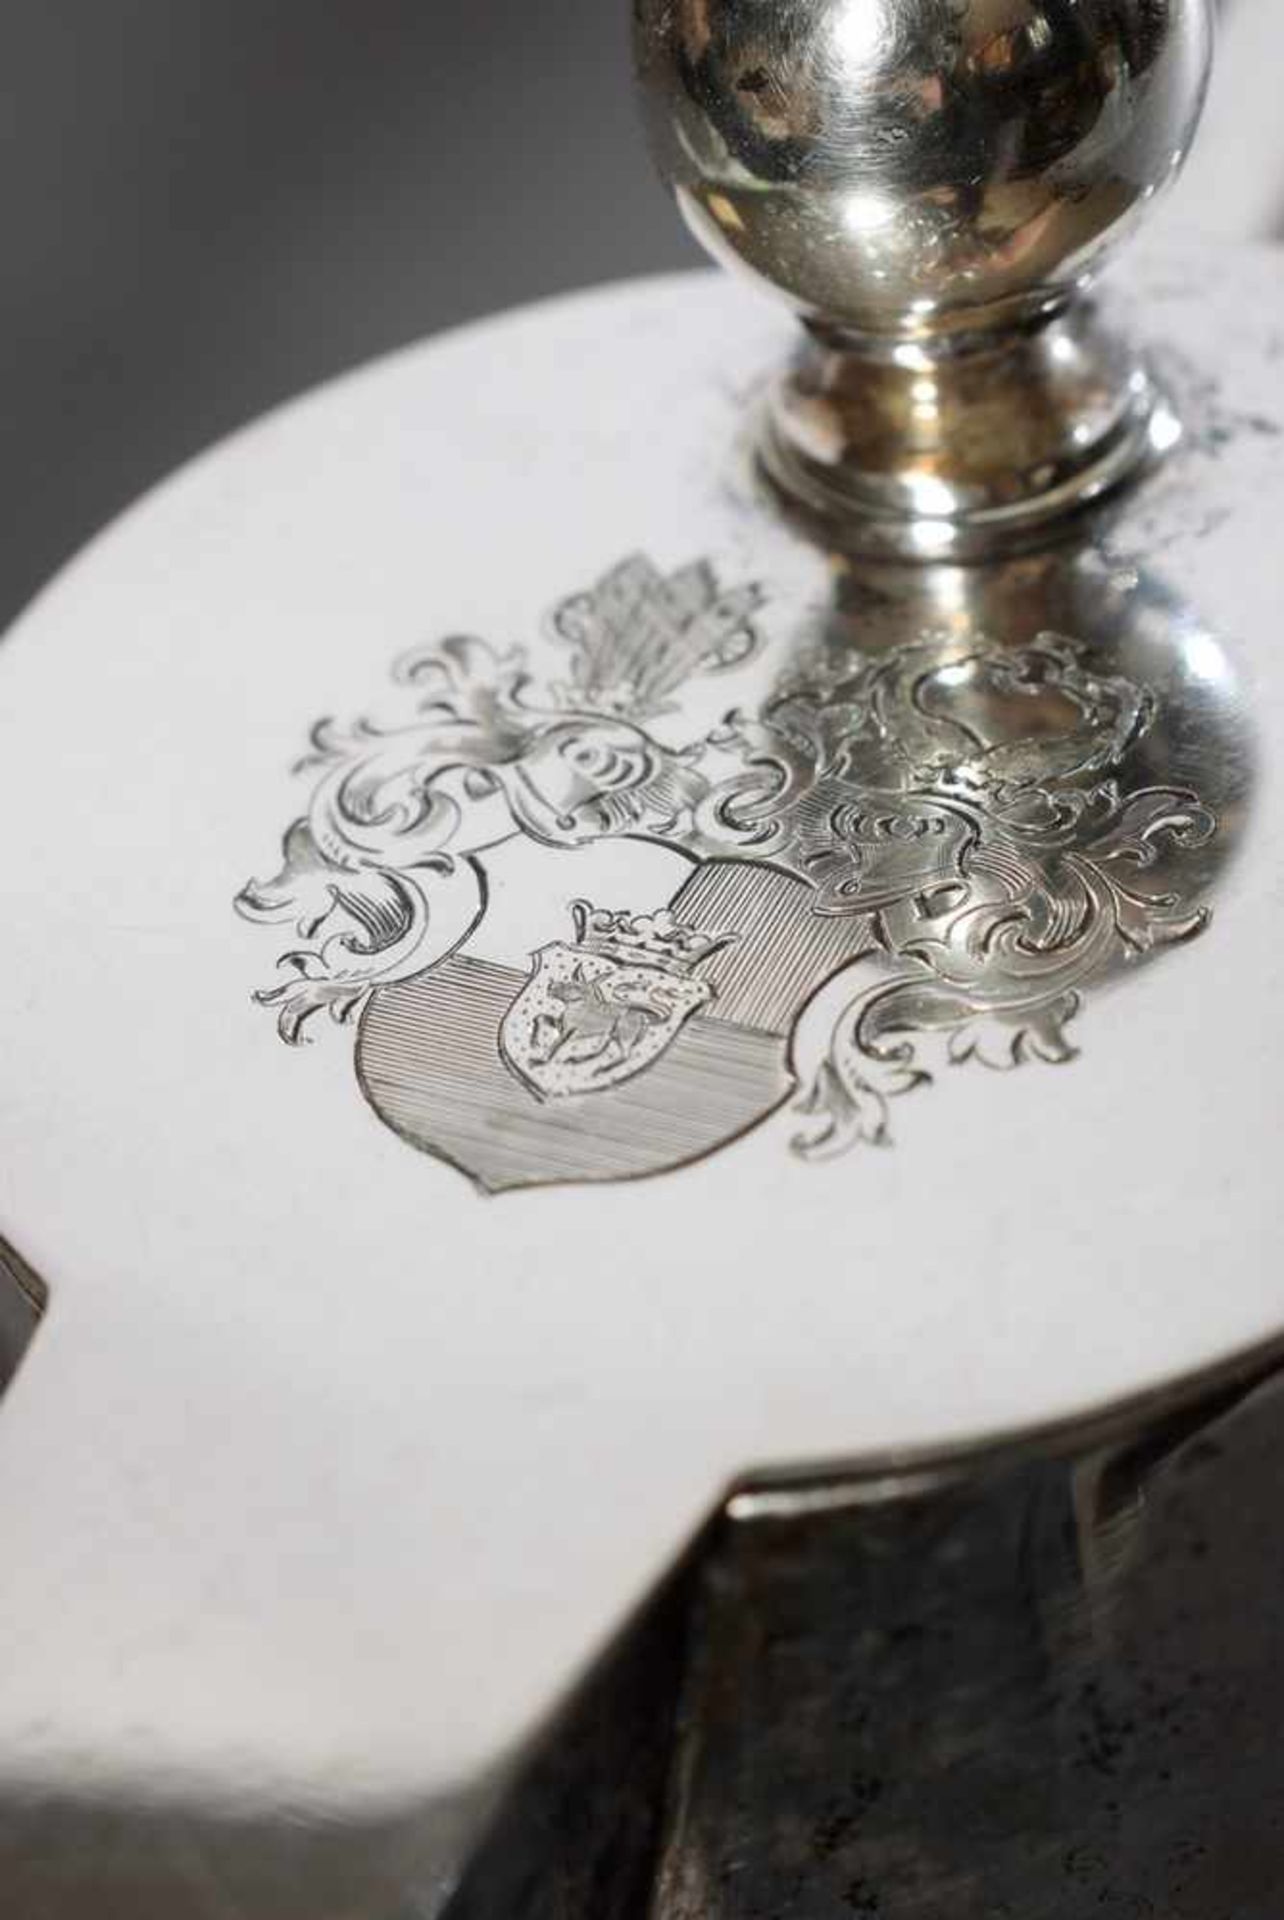 Weinkanne mit Silber 800 Montierung und Wappengravur "von Plessen" sowie optischem Schliff, - Bild 2 aus 3